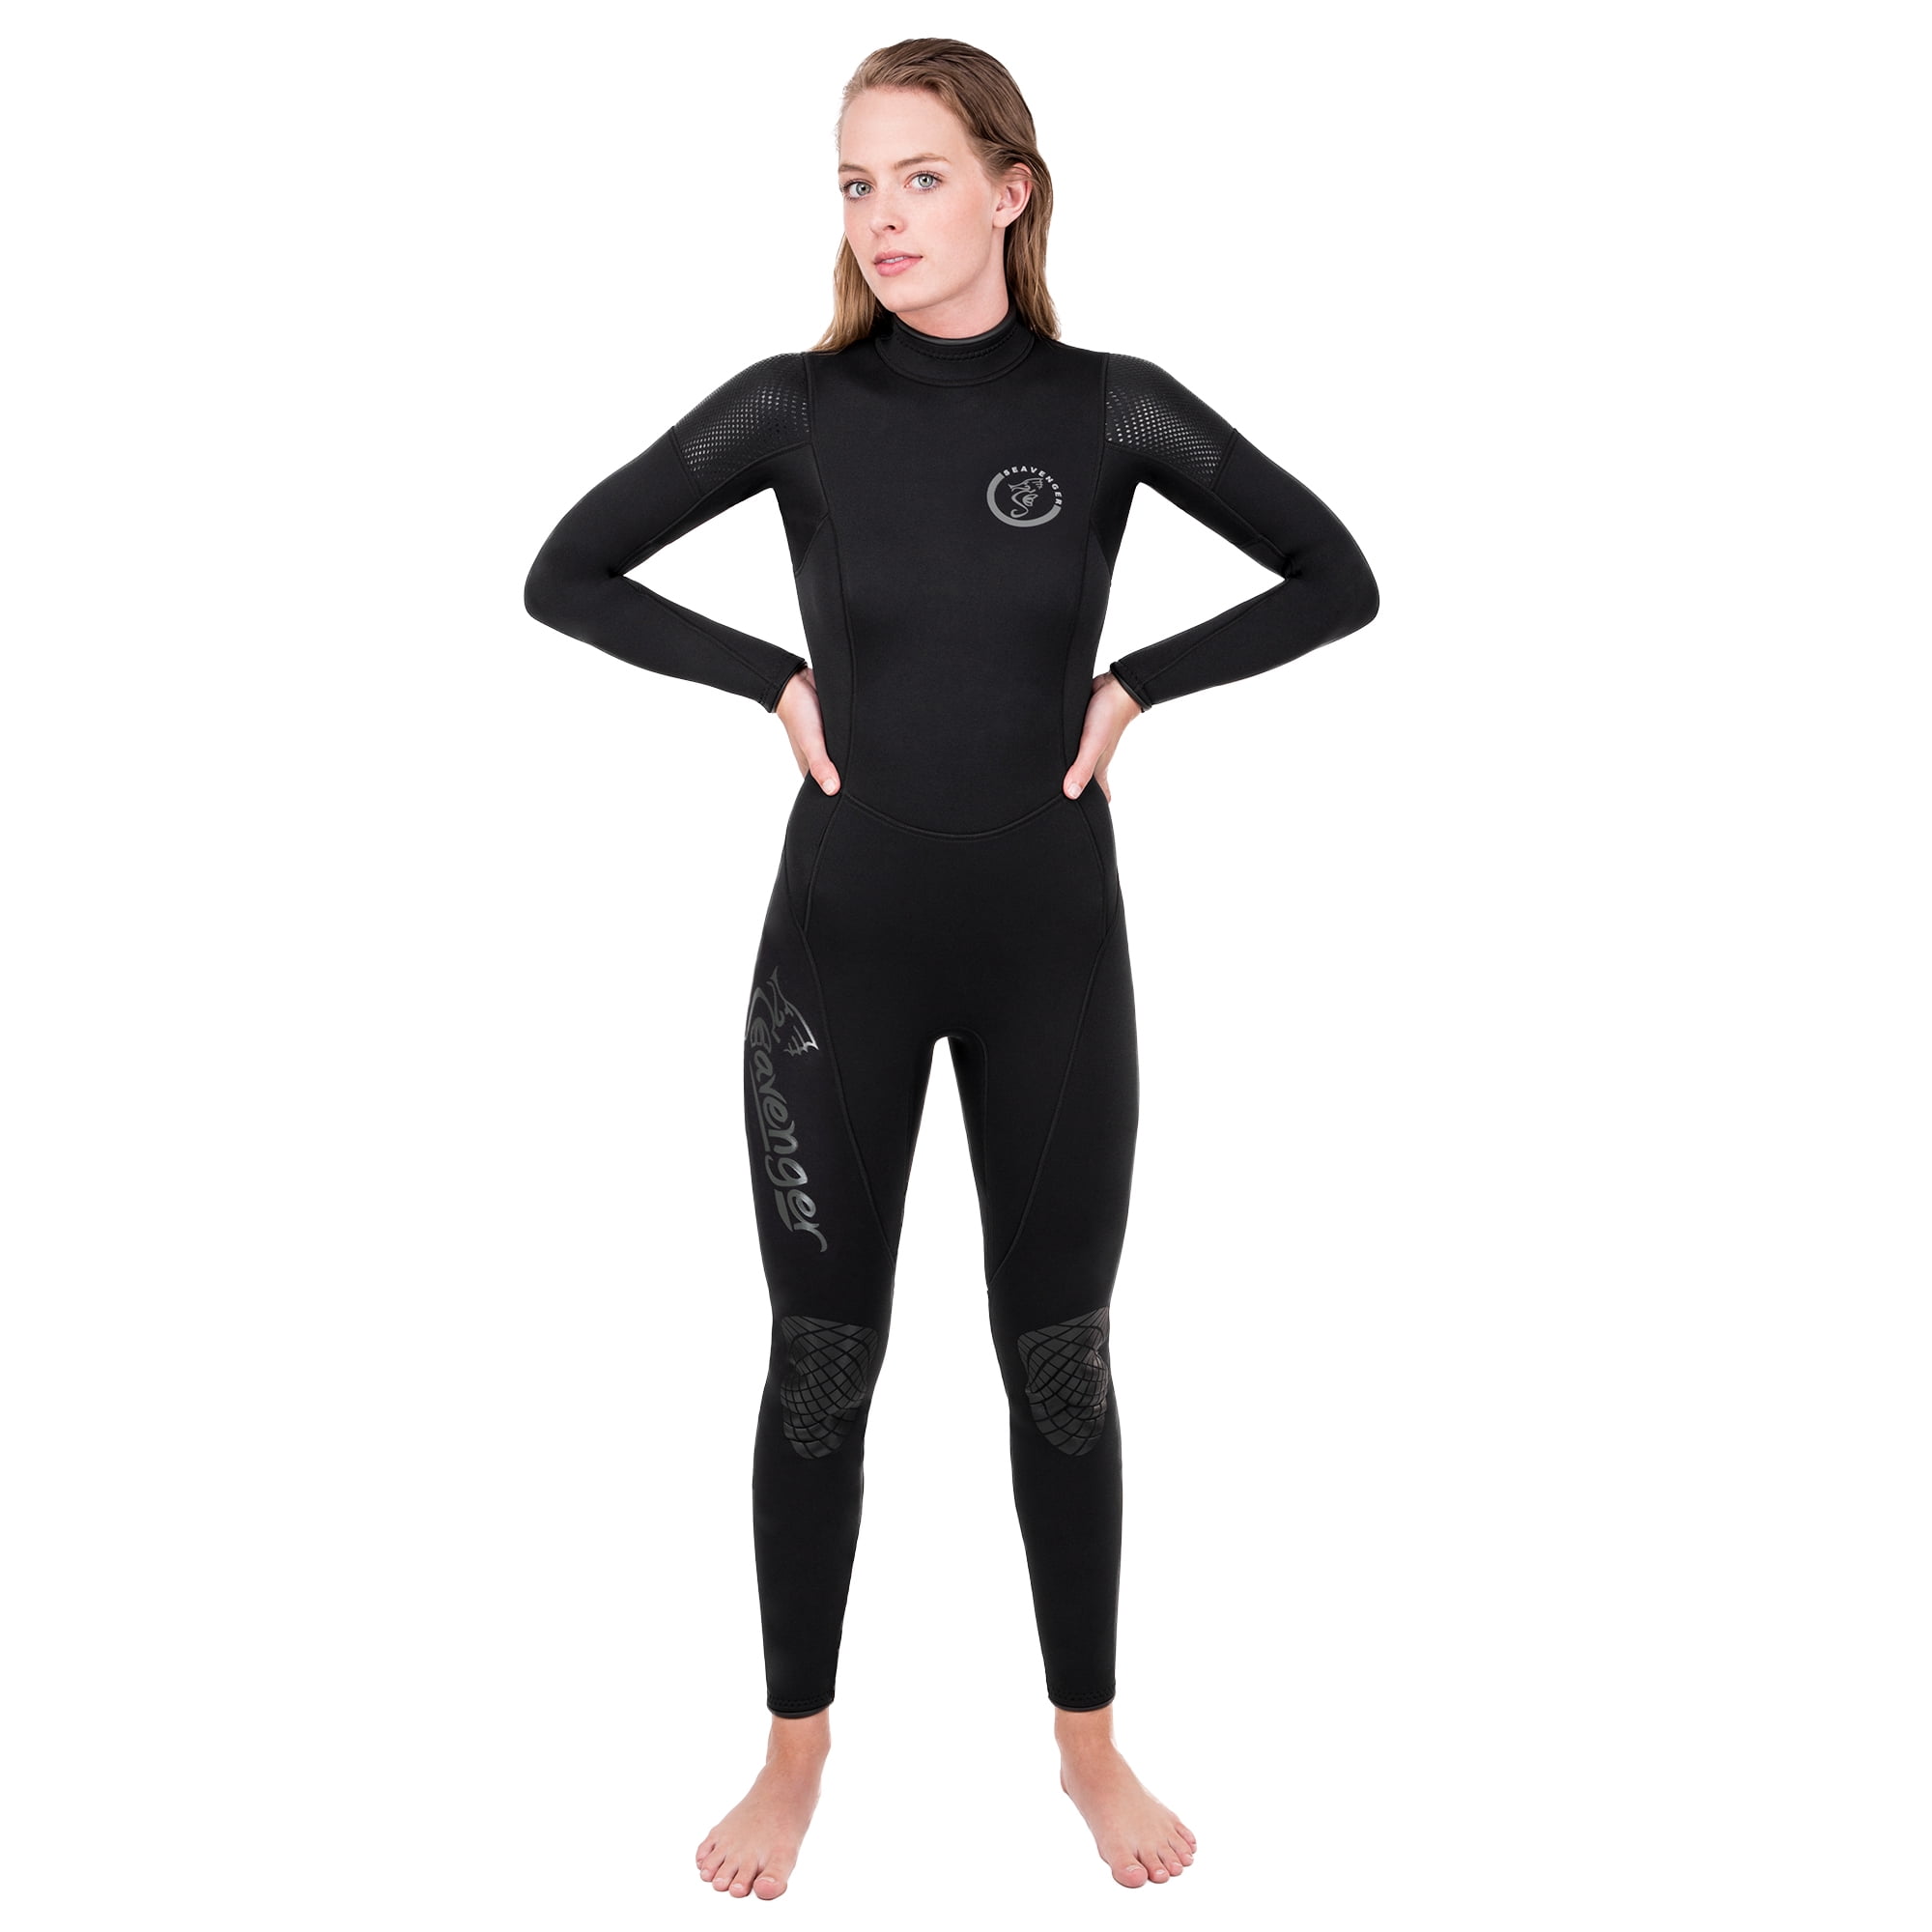 Seavenger’s 3mm Neoprene Men's Full Wetsuit Stretch Panels Logo Color Alteration 